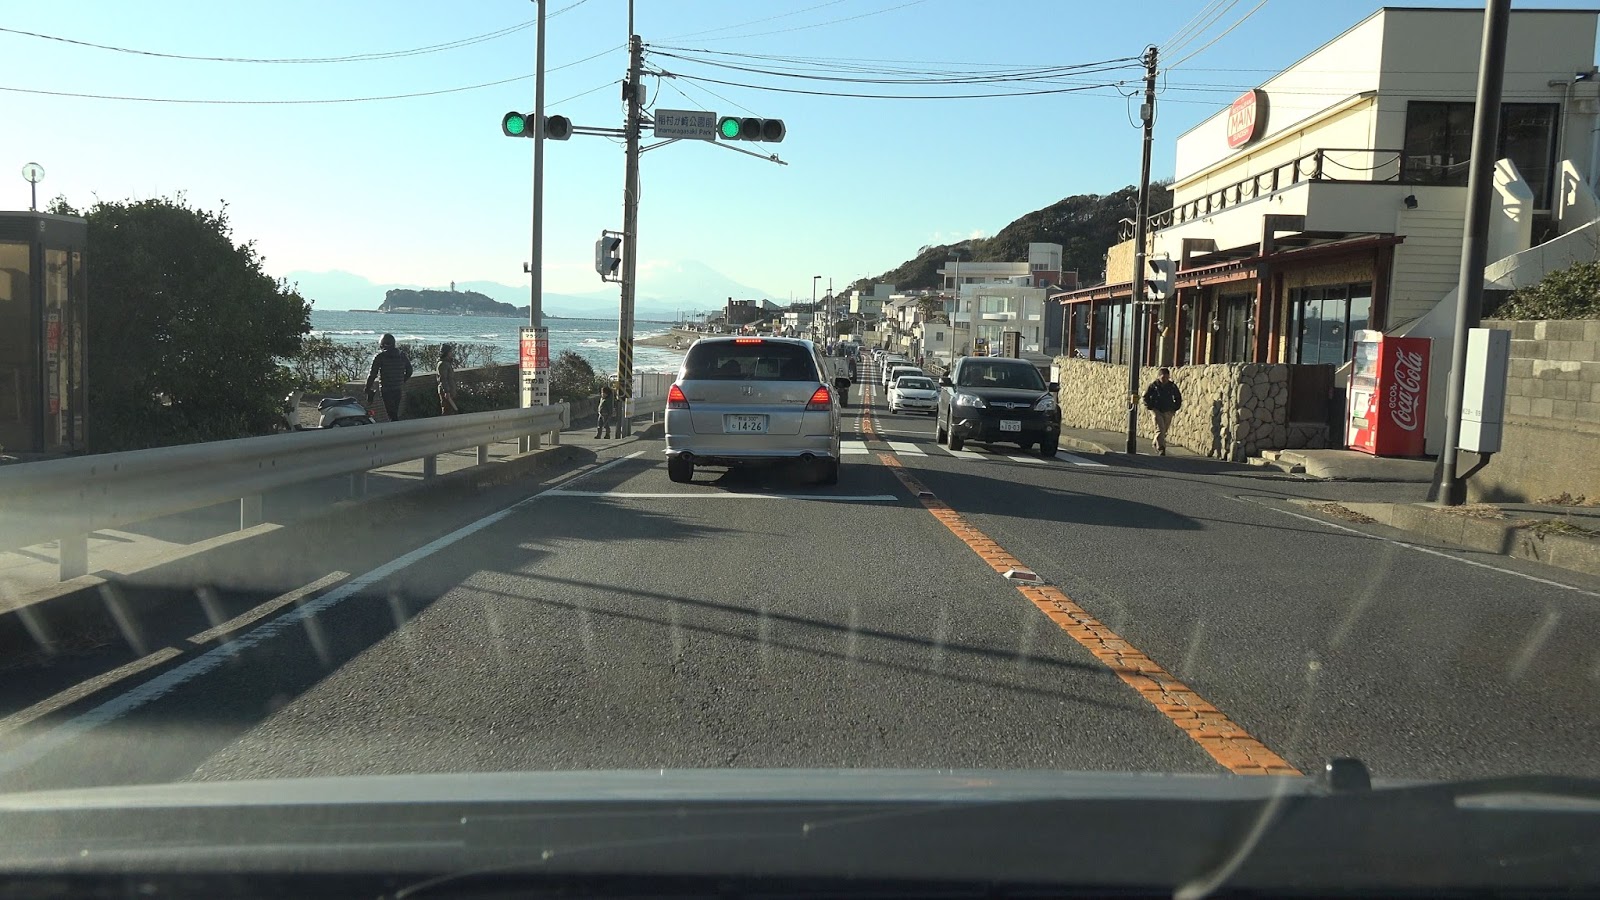 Rcp193の道路についてのブログ 道路以外もあります 国道134号 鎌倉 江の島の渋滞はどうして起こるのか 実際に通ってみて感じたこと